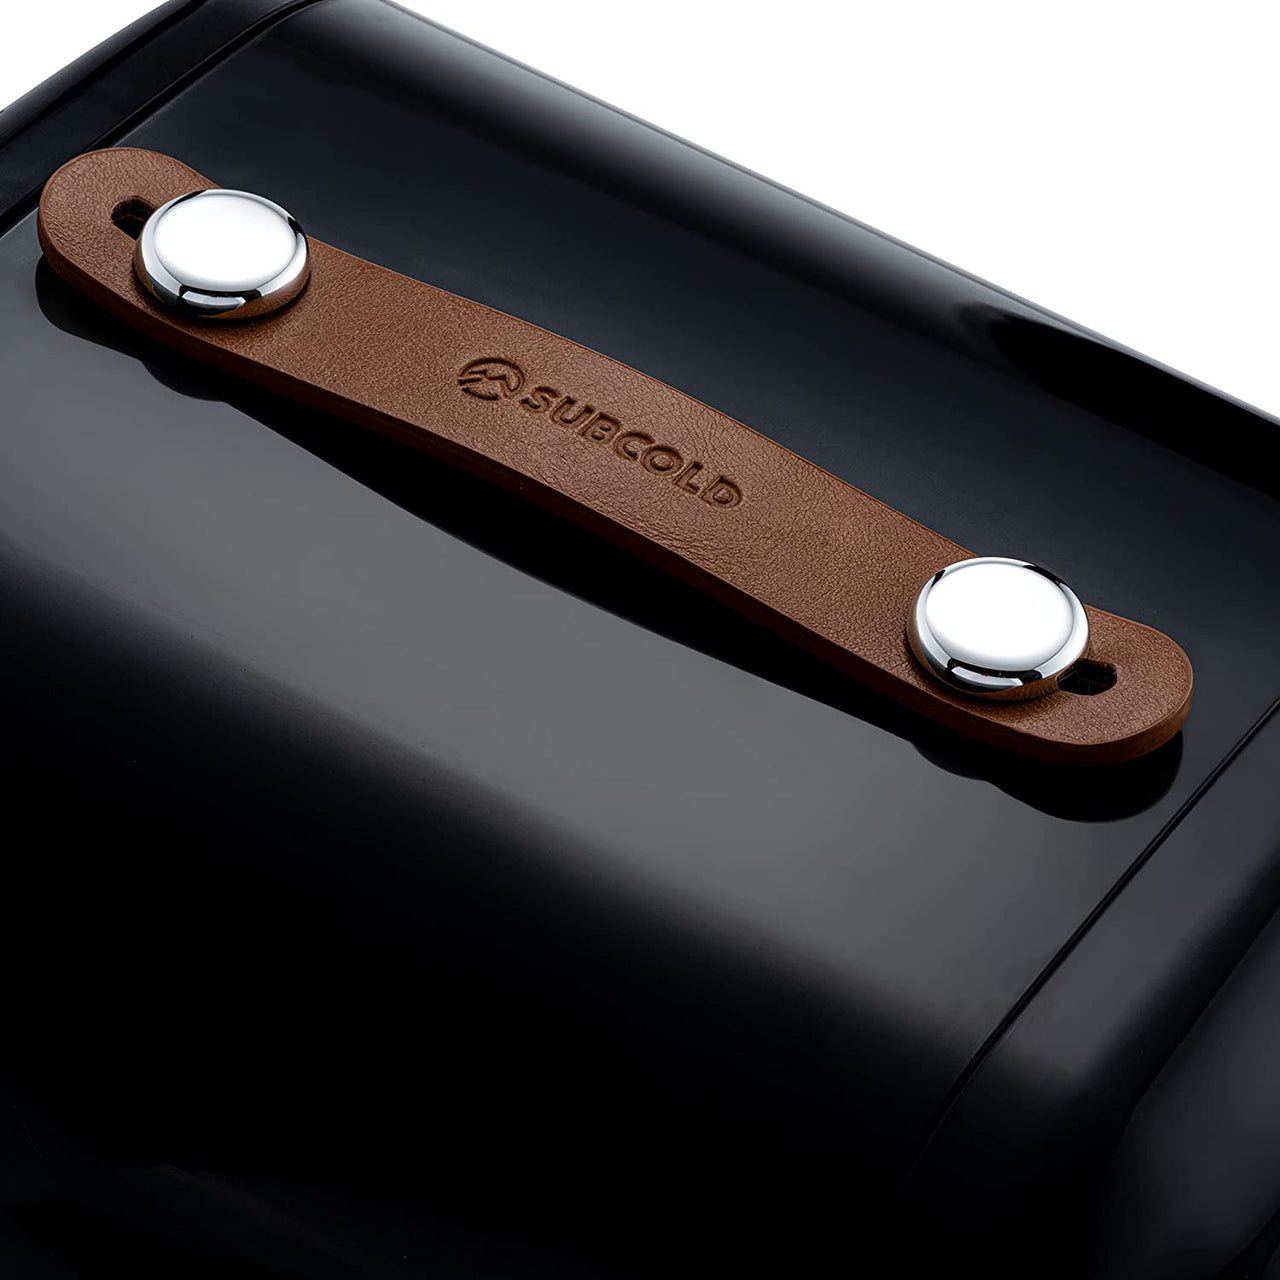 Subcold Pro 6 litre portable mini fridge carry leather handle